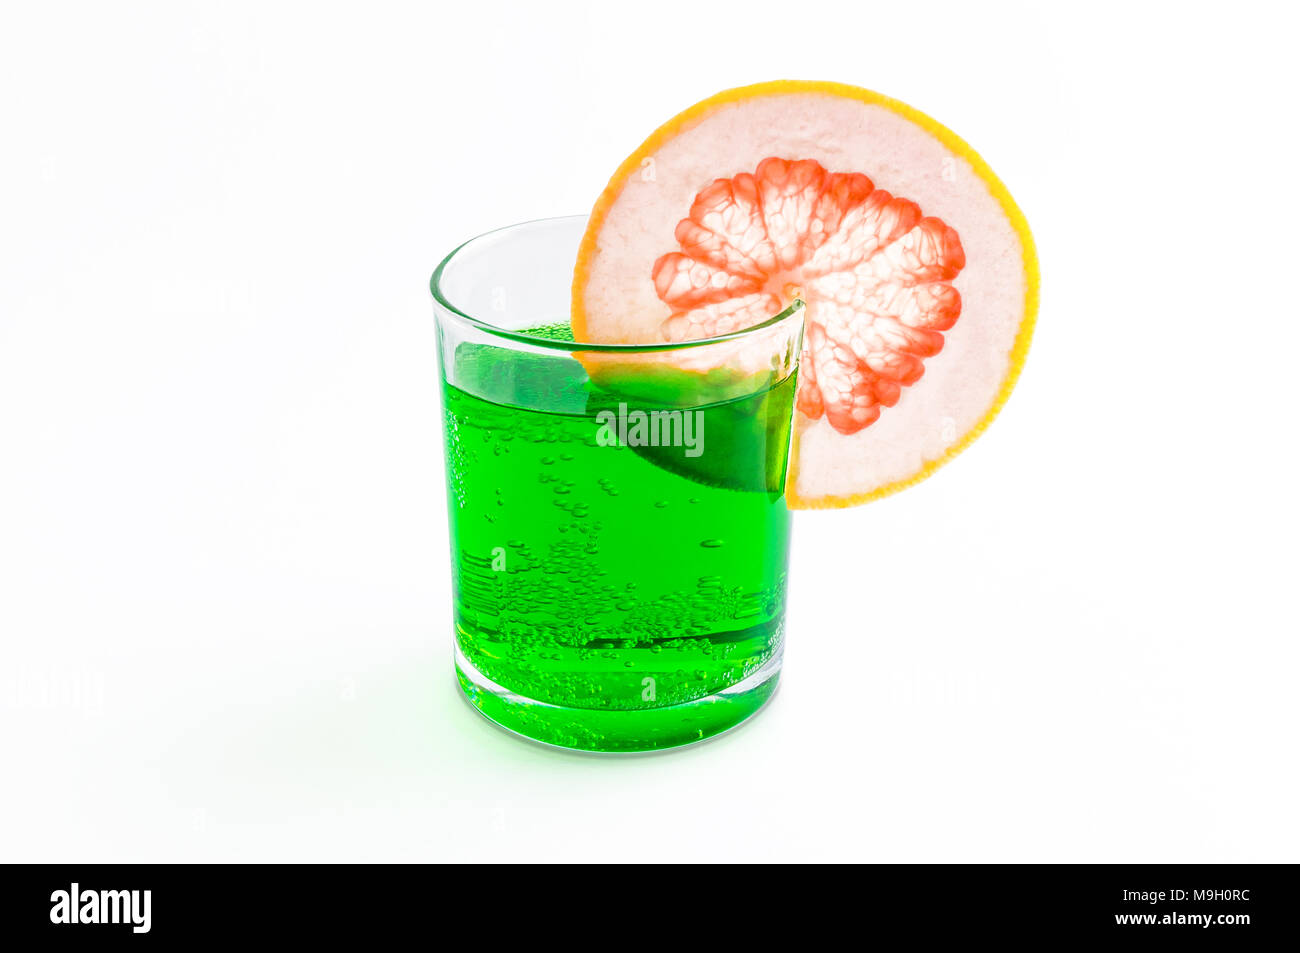 Cóctel de soda con pomelo verde en borde de un cristal transparente y aroma a menta de primavera y verano aislado sobre fondo blanco Fotografía de stock -